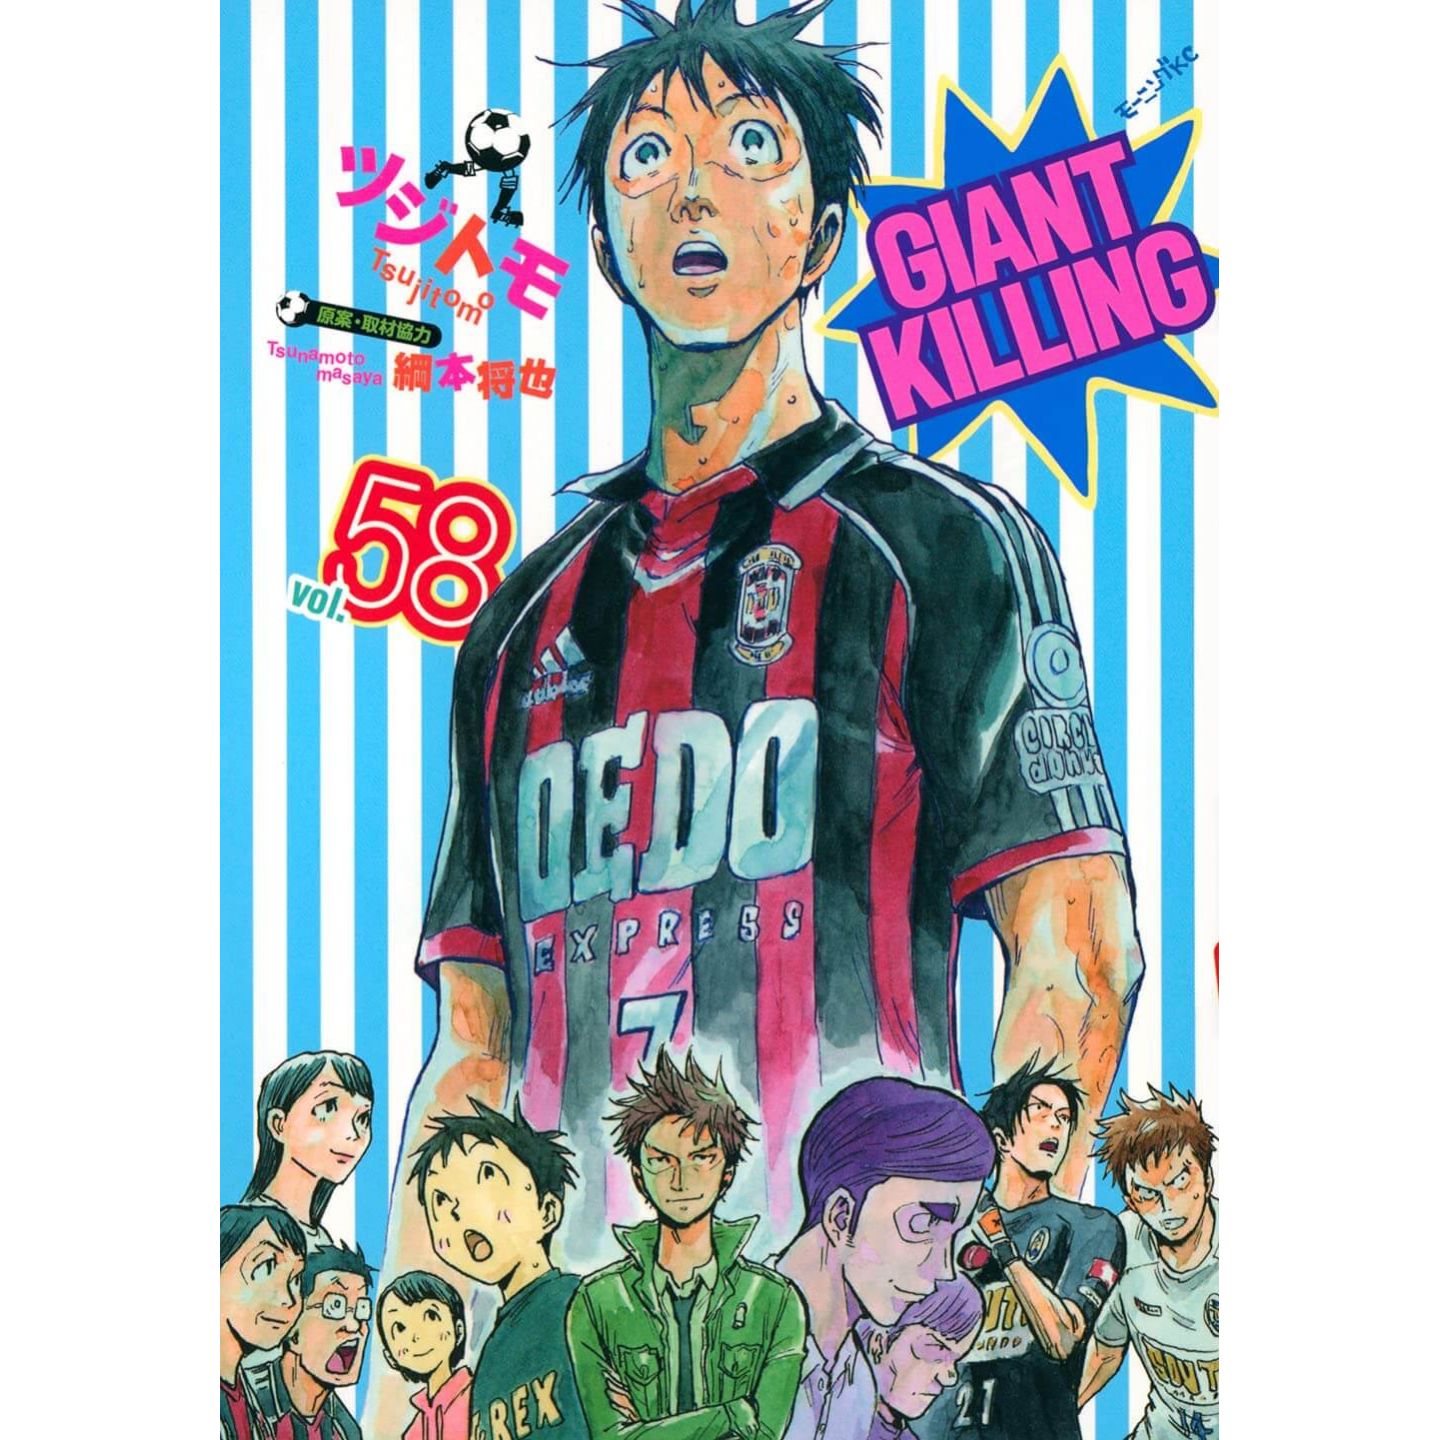 Giant Killing vol.58 - Morning Comics (Japanese version)